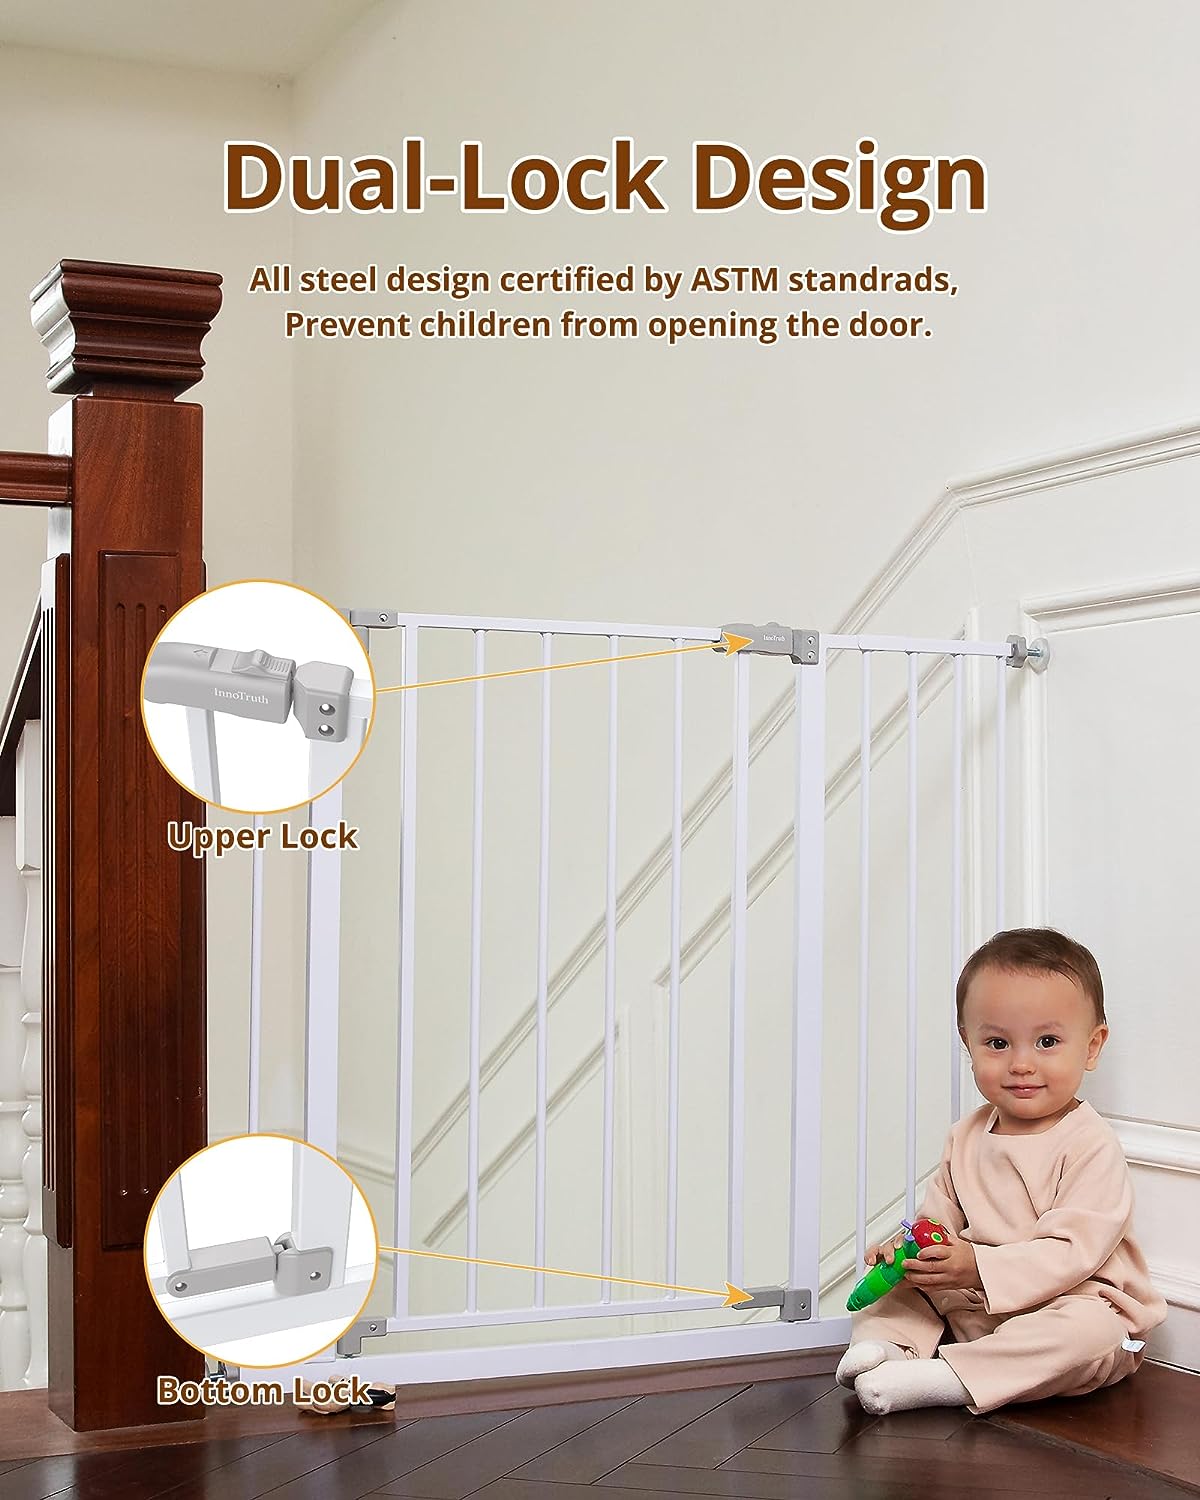 Puerta de bebé de 28.9-42.1 pulgadas de ancho para escaleras y puertas, puertas